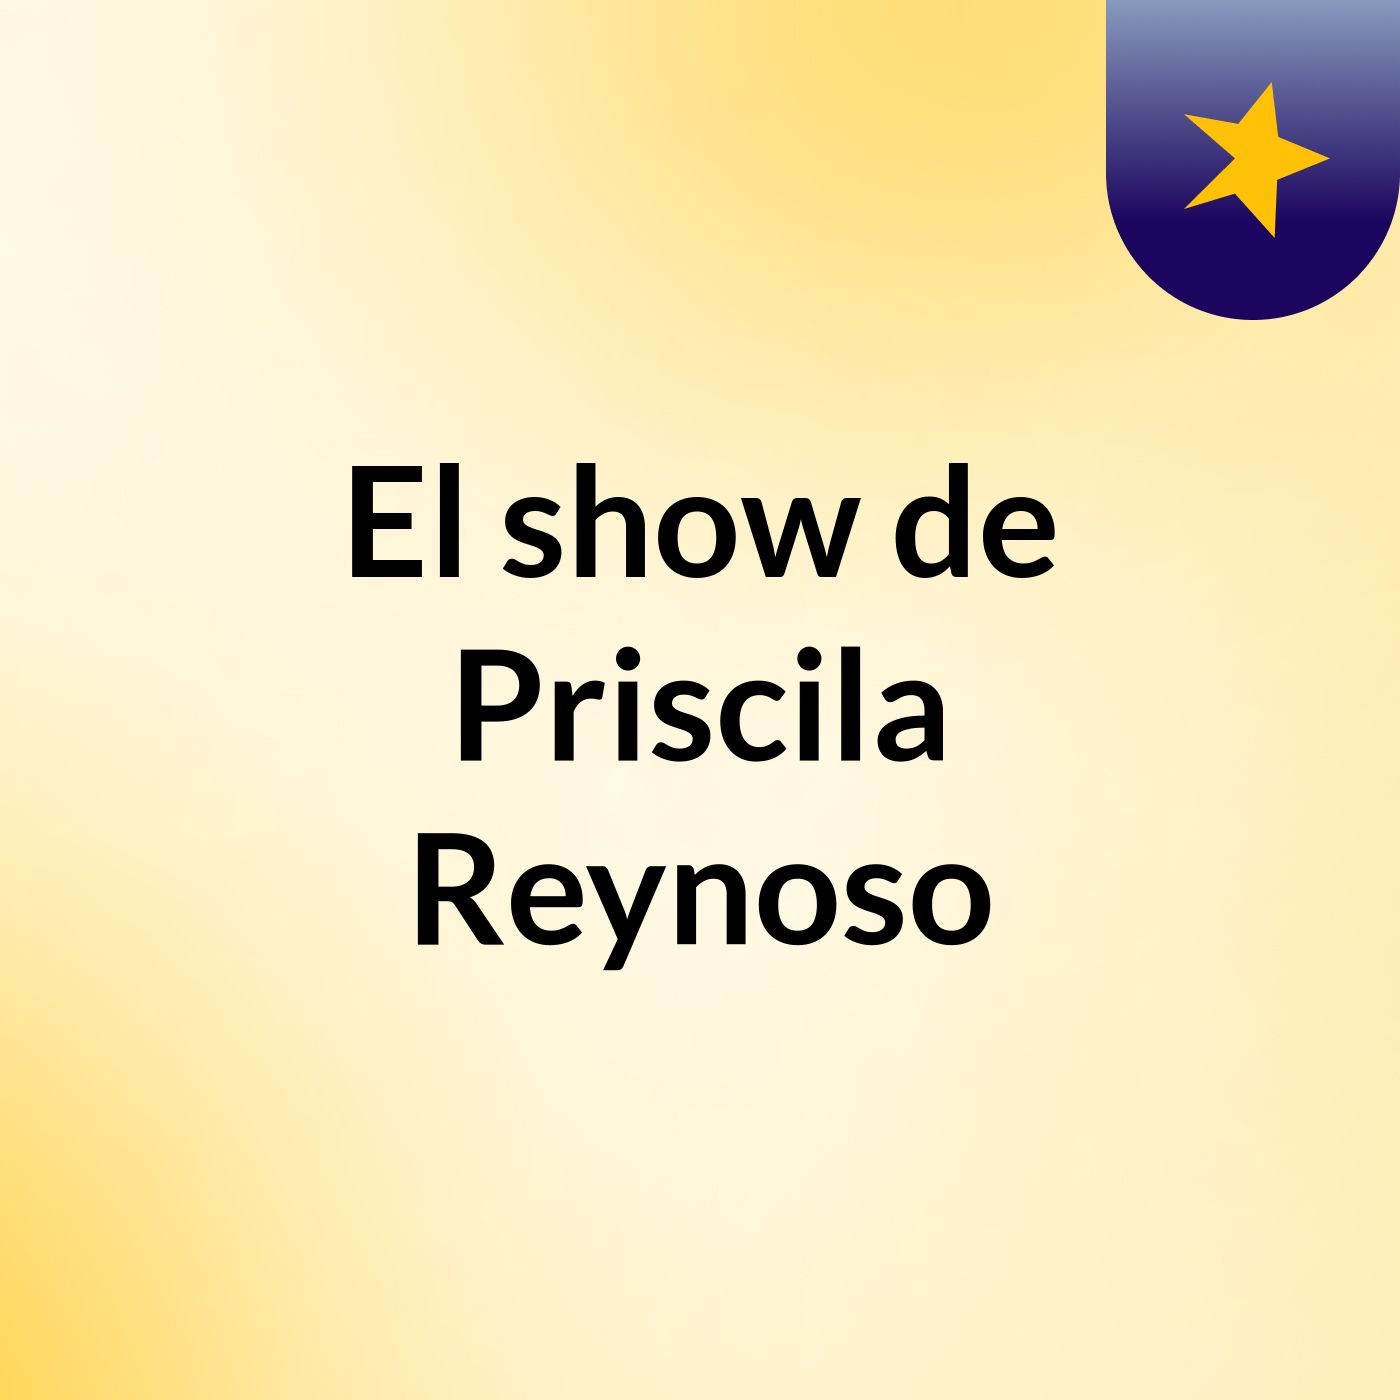 El show de Priscila Reynoso